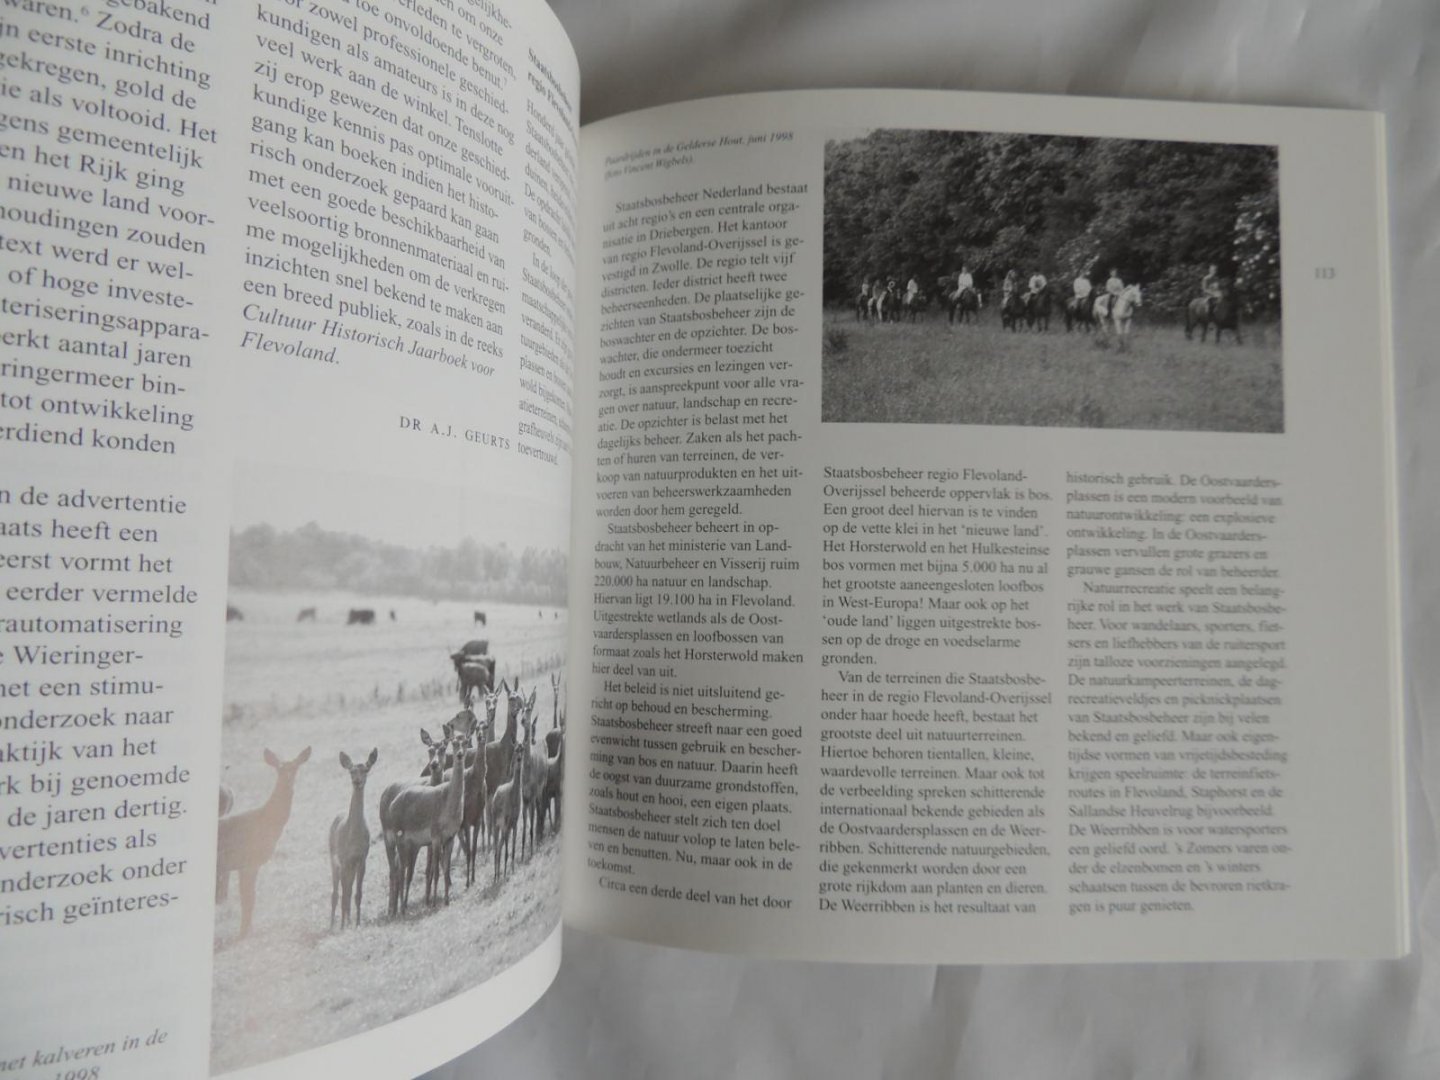 andre geurts a. j. /// kerkhoven a a   /// van der most .///  ea. - Cultuur historisch jaarboek voor Flevoland 1999. Tot deffensie van de Zuyderzee